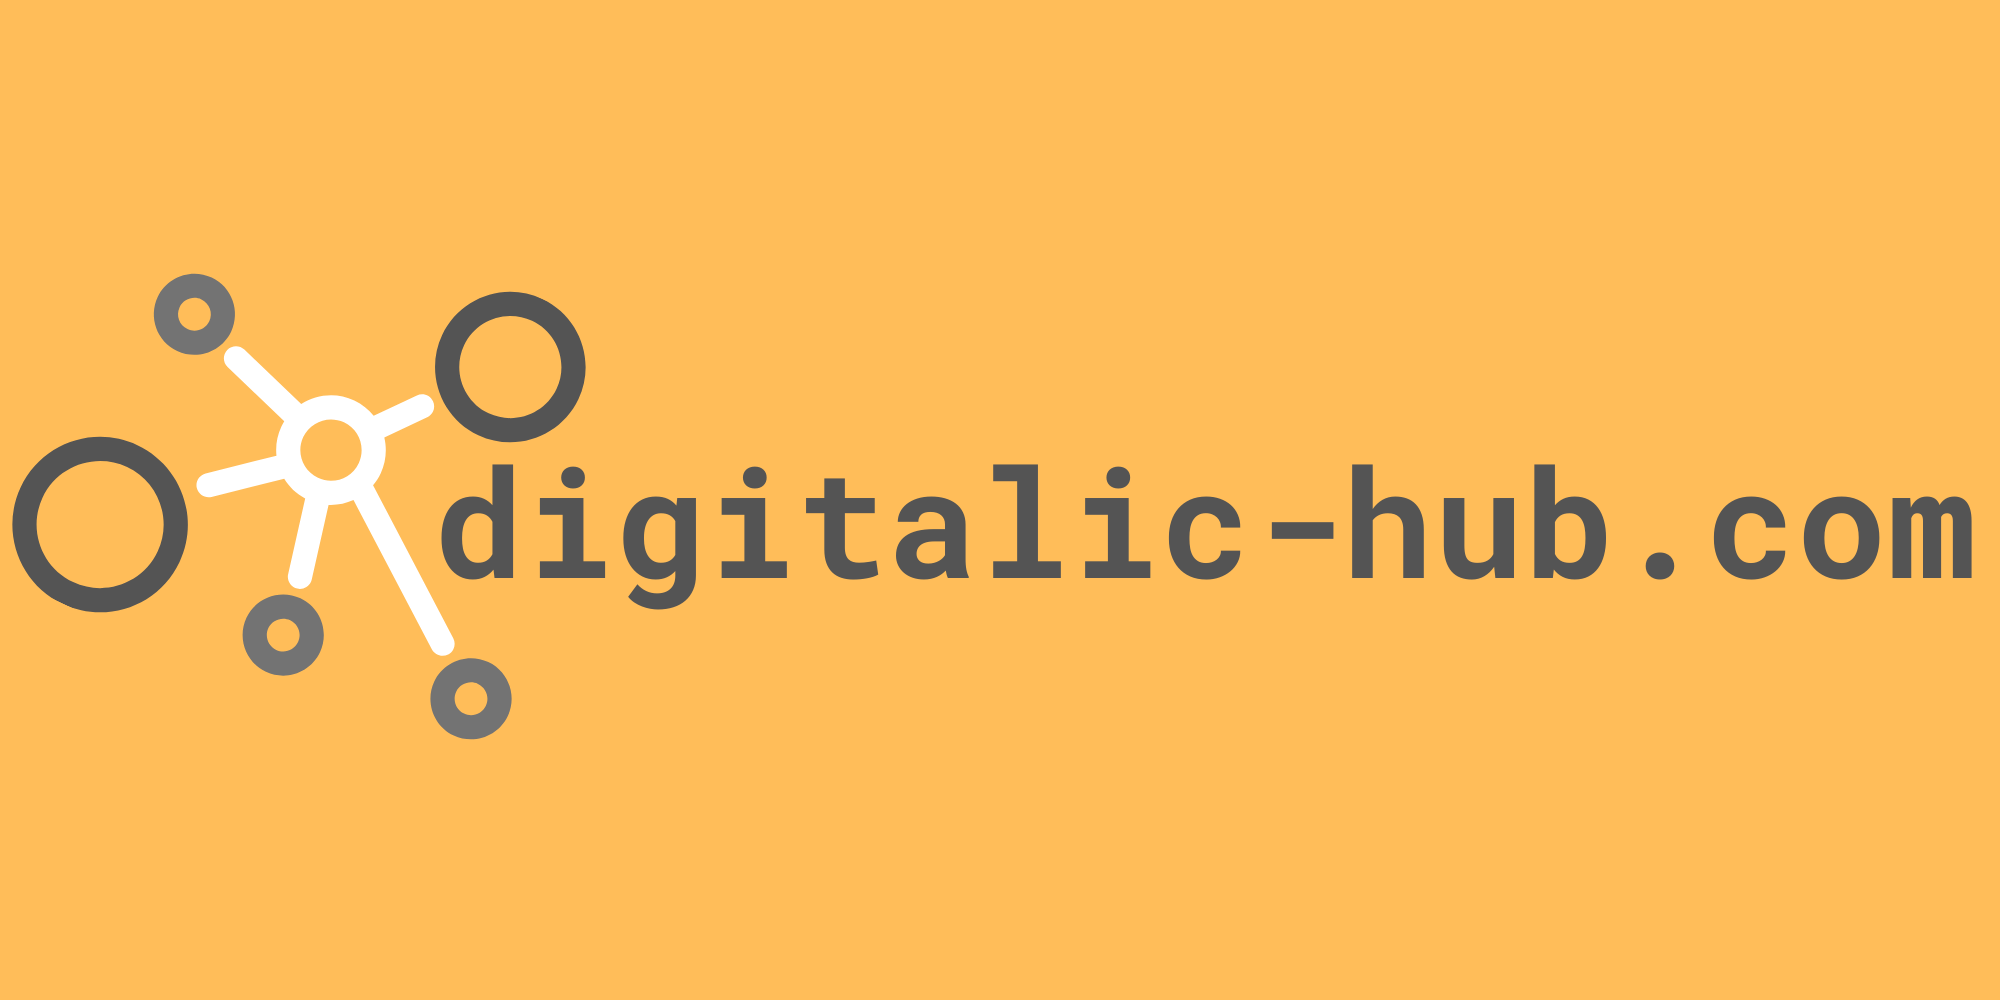 digitalic-hub.com